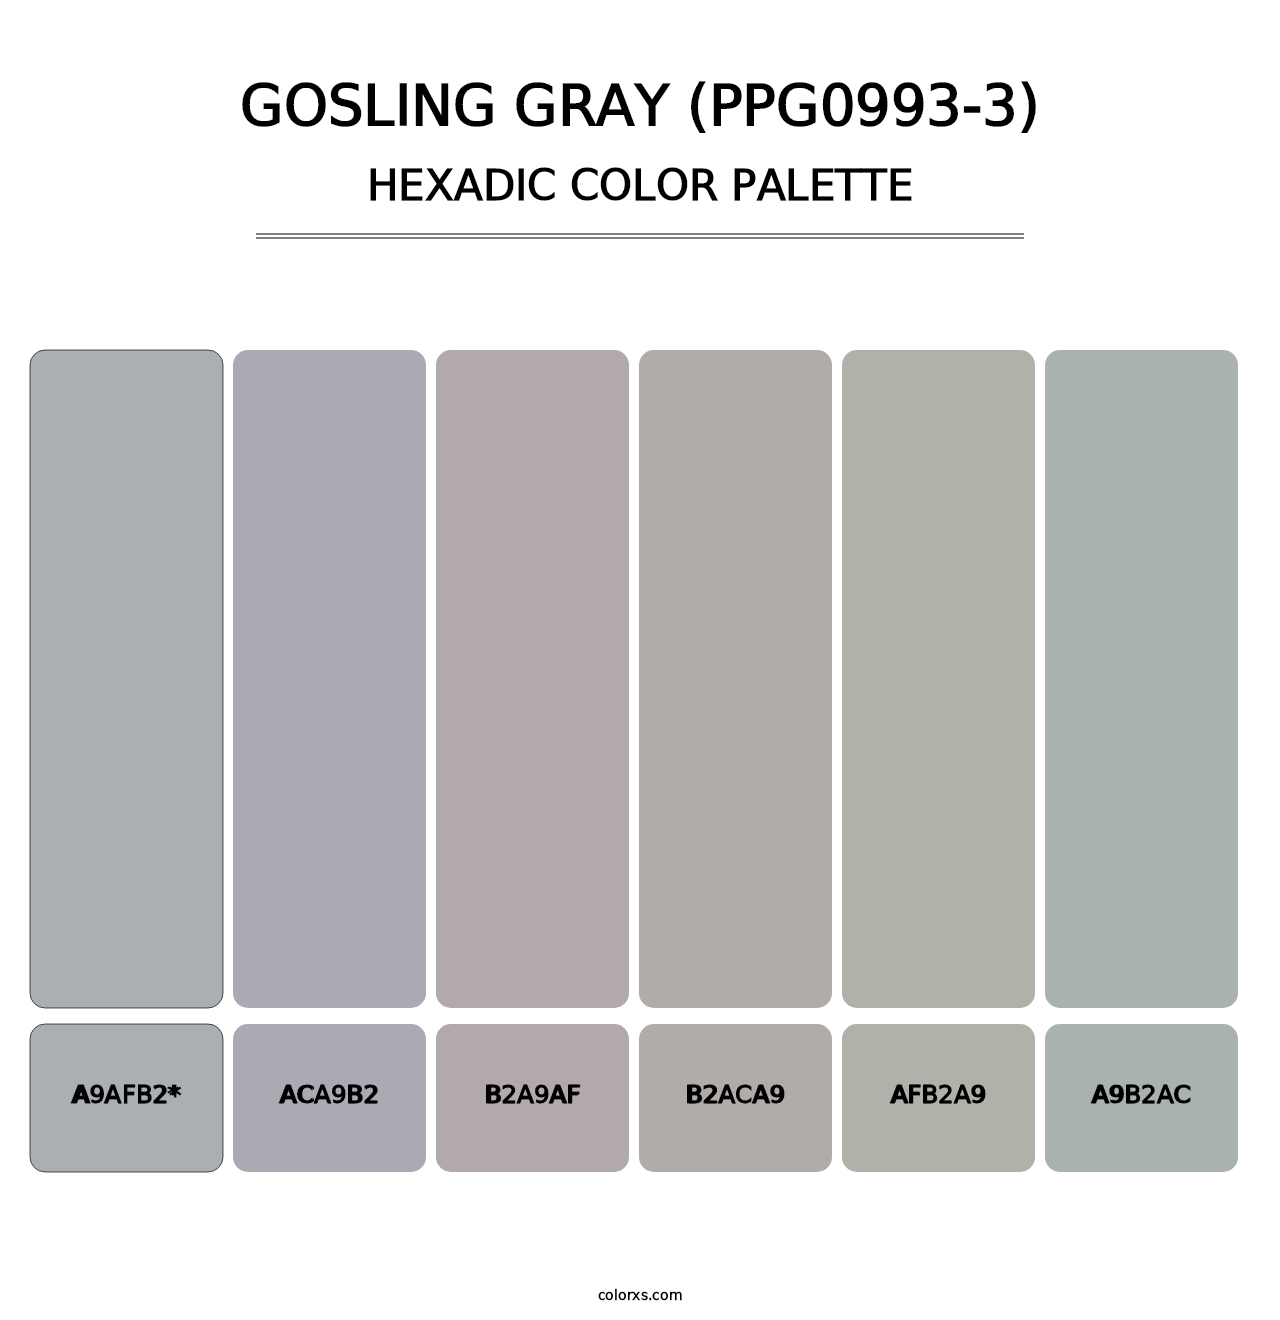 Gosling Gray (PPG0993-3) - Hexadic Color Palette